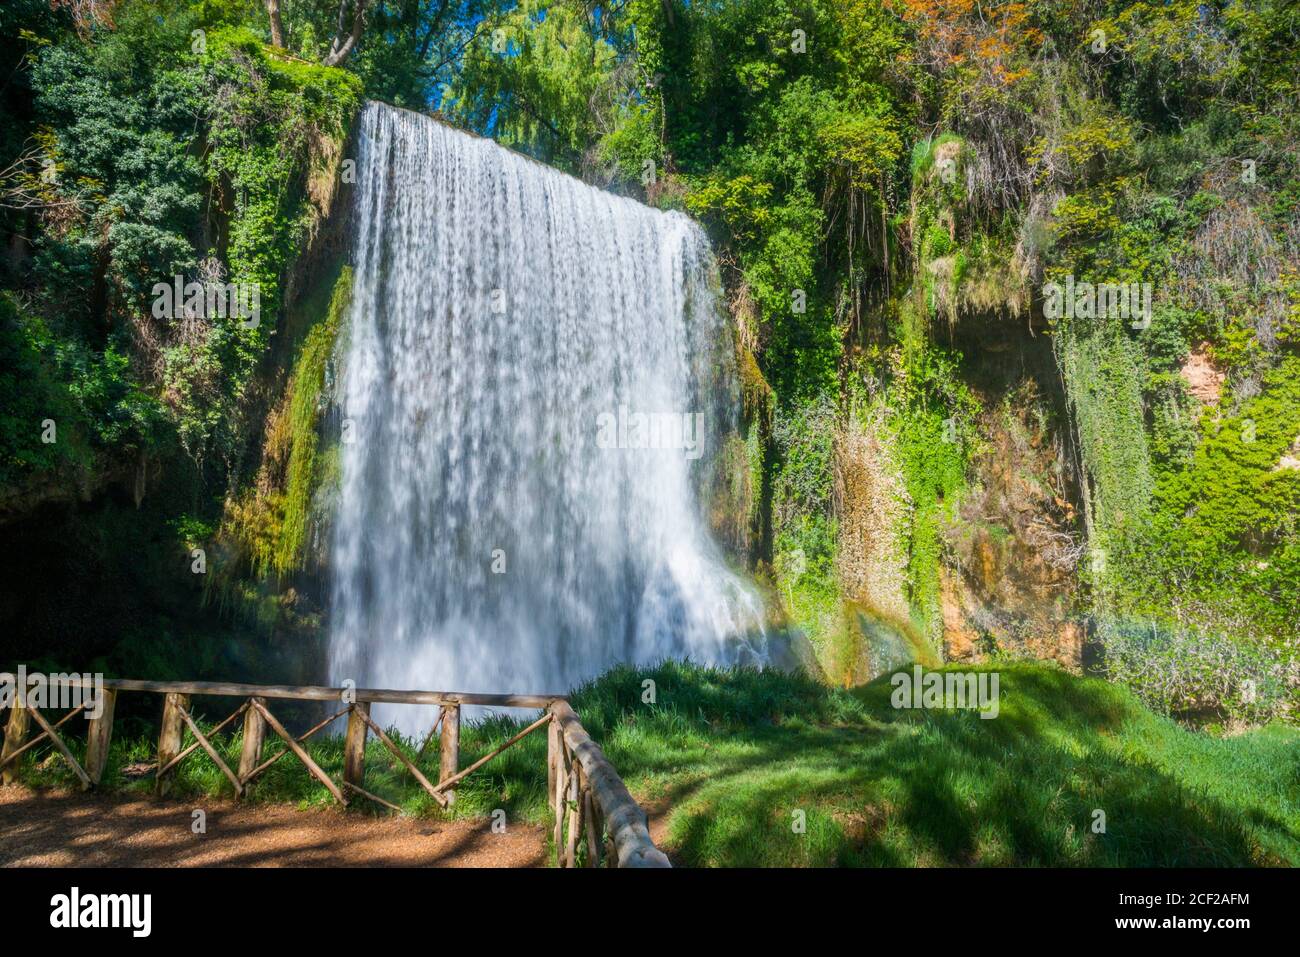 La Caprichosa cascade. Monasterio de Piedra Natural Park, Nuevalos, Zaragoza province, Aragon, Spain. Stock Photo